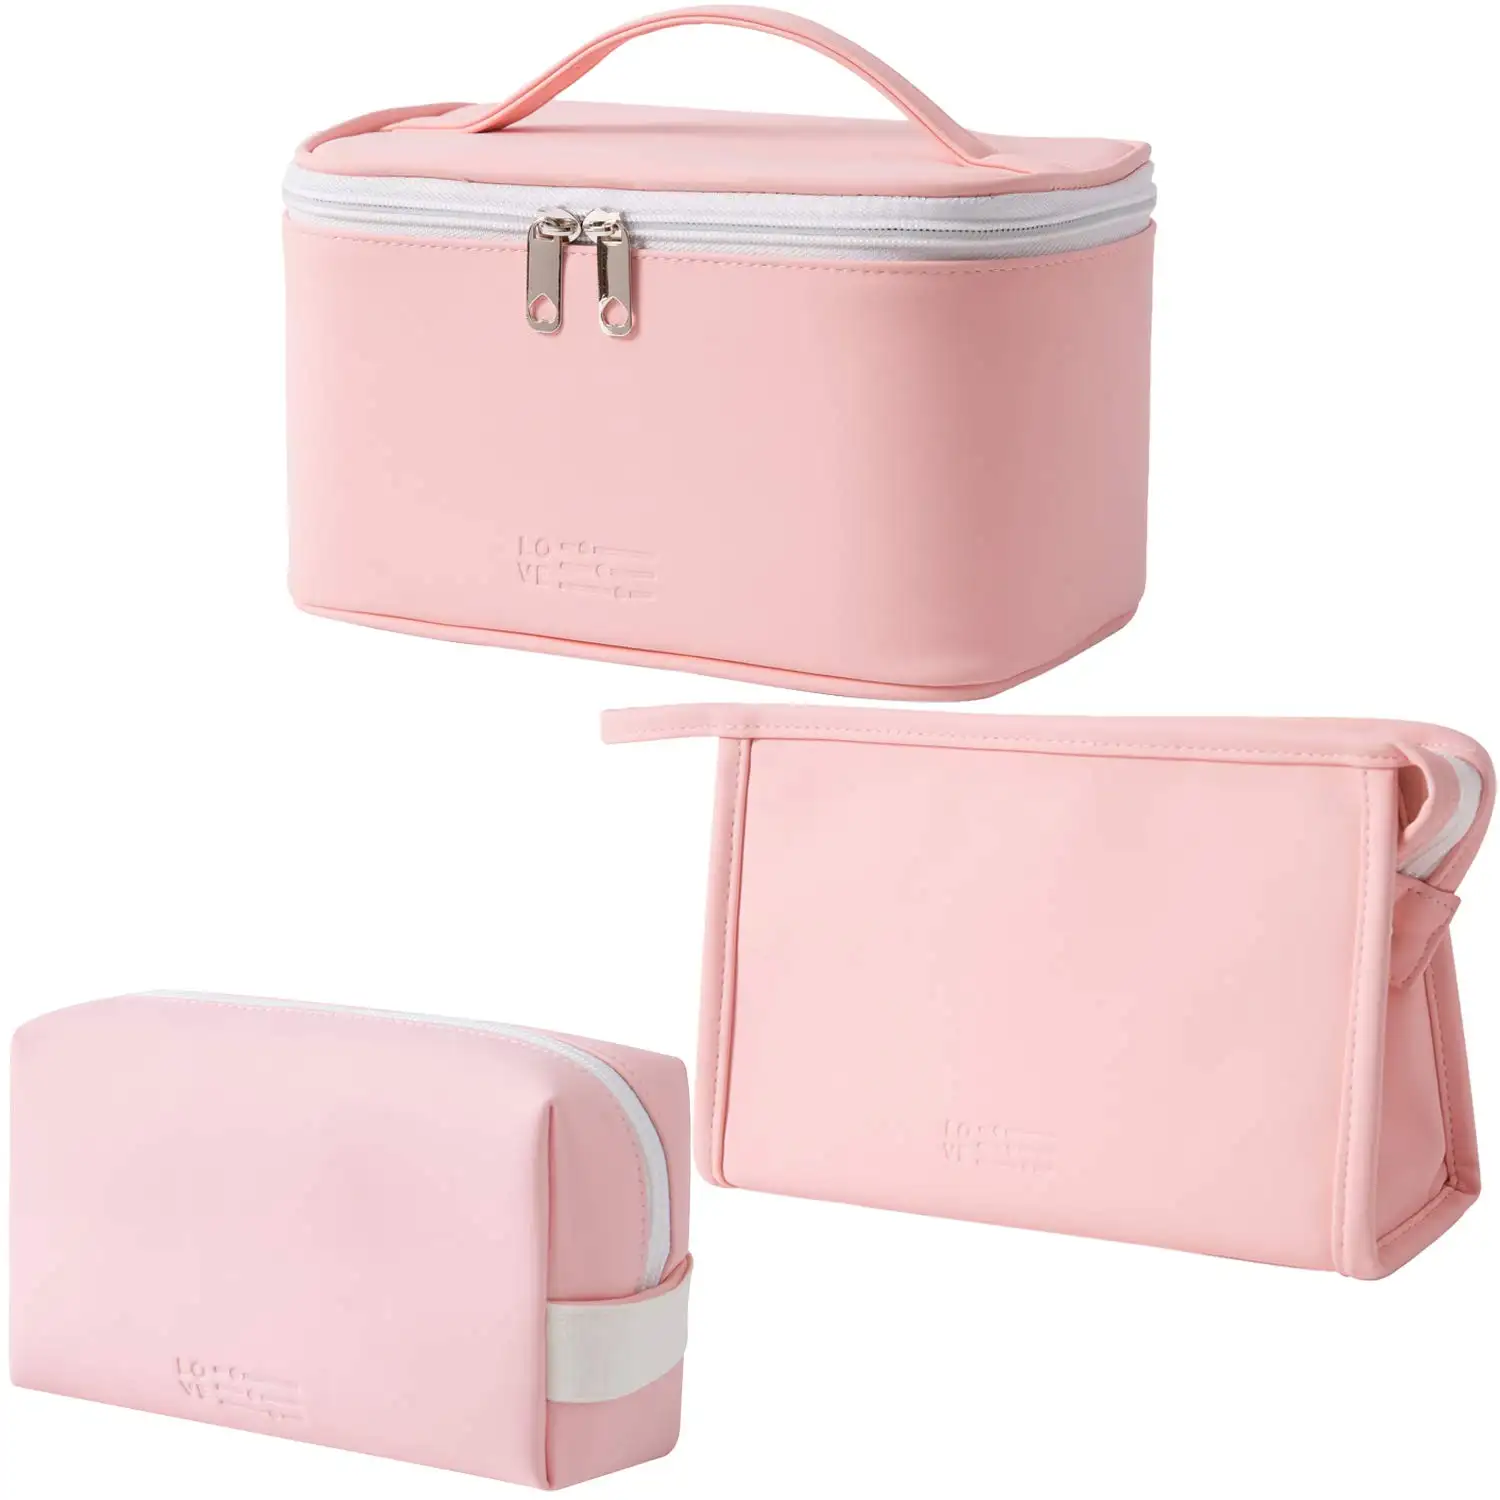 財布ポーチ旅行用化粧バッグ3個セット美容ジッパーオーガナイザーバッグギフト女の子女性用